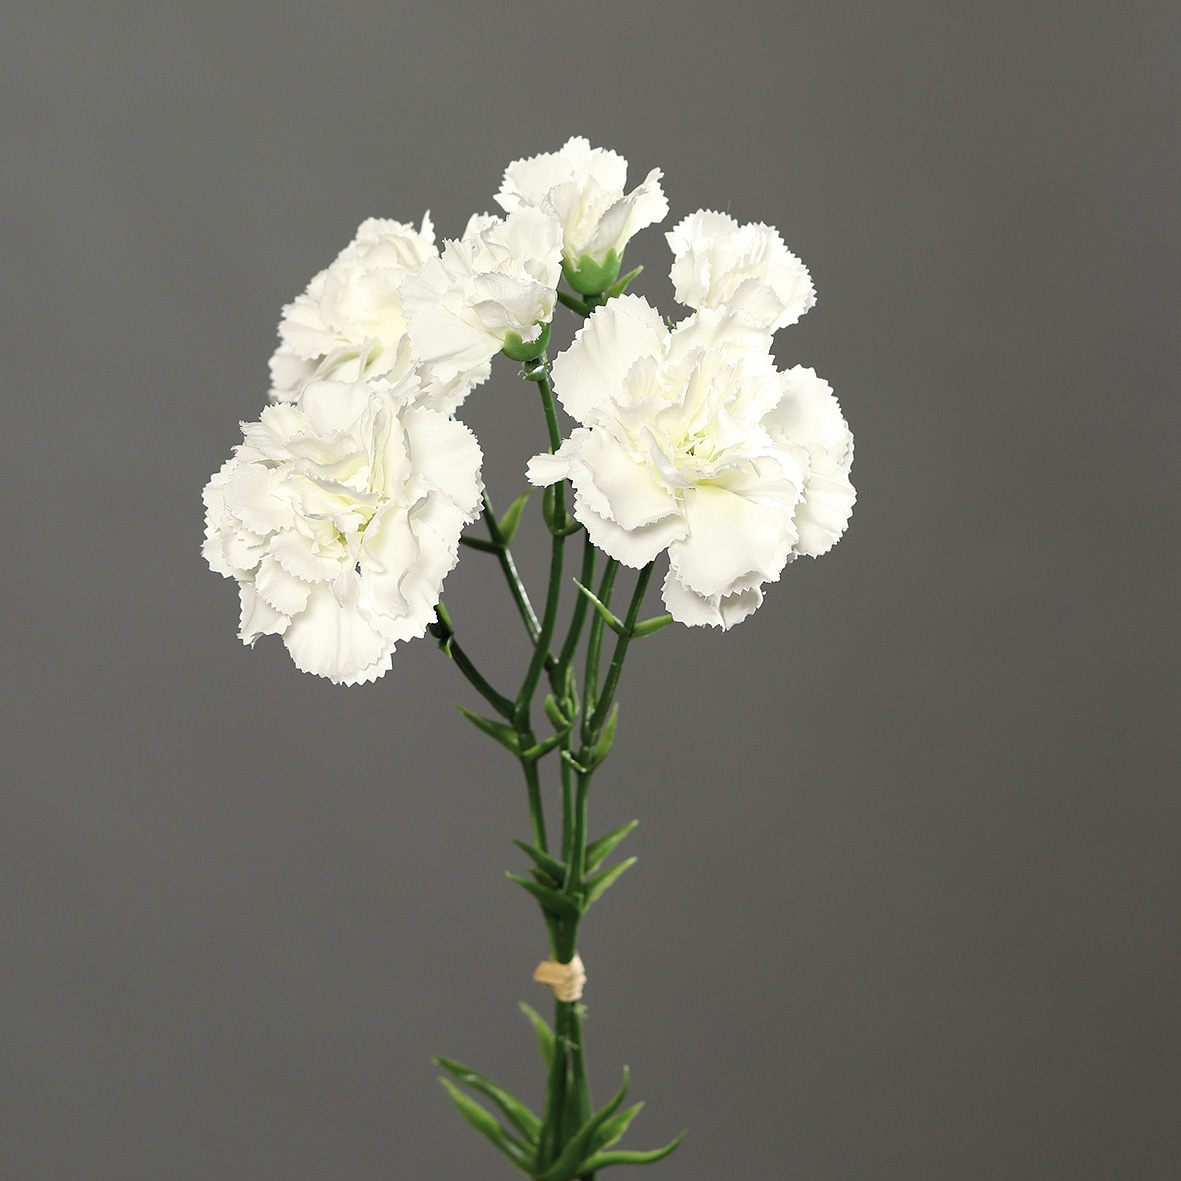 Nelkenbund mit 3 Stielen weiß Nelken DP Kunstblumen künstliche 30cm Blumen